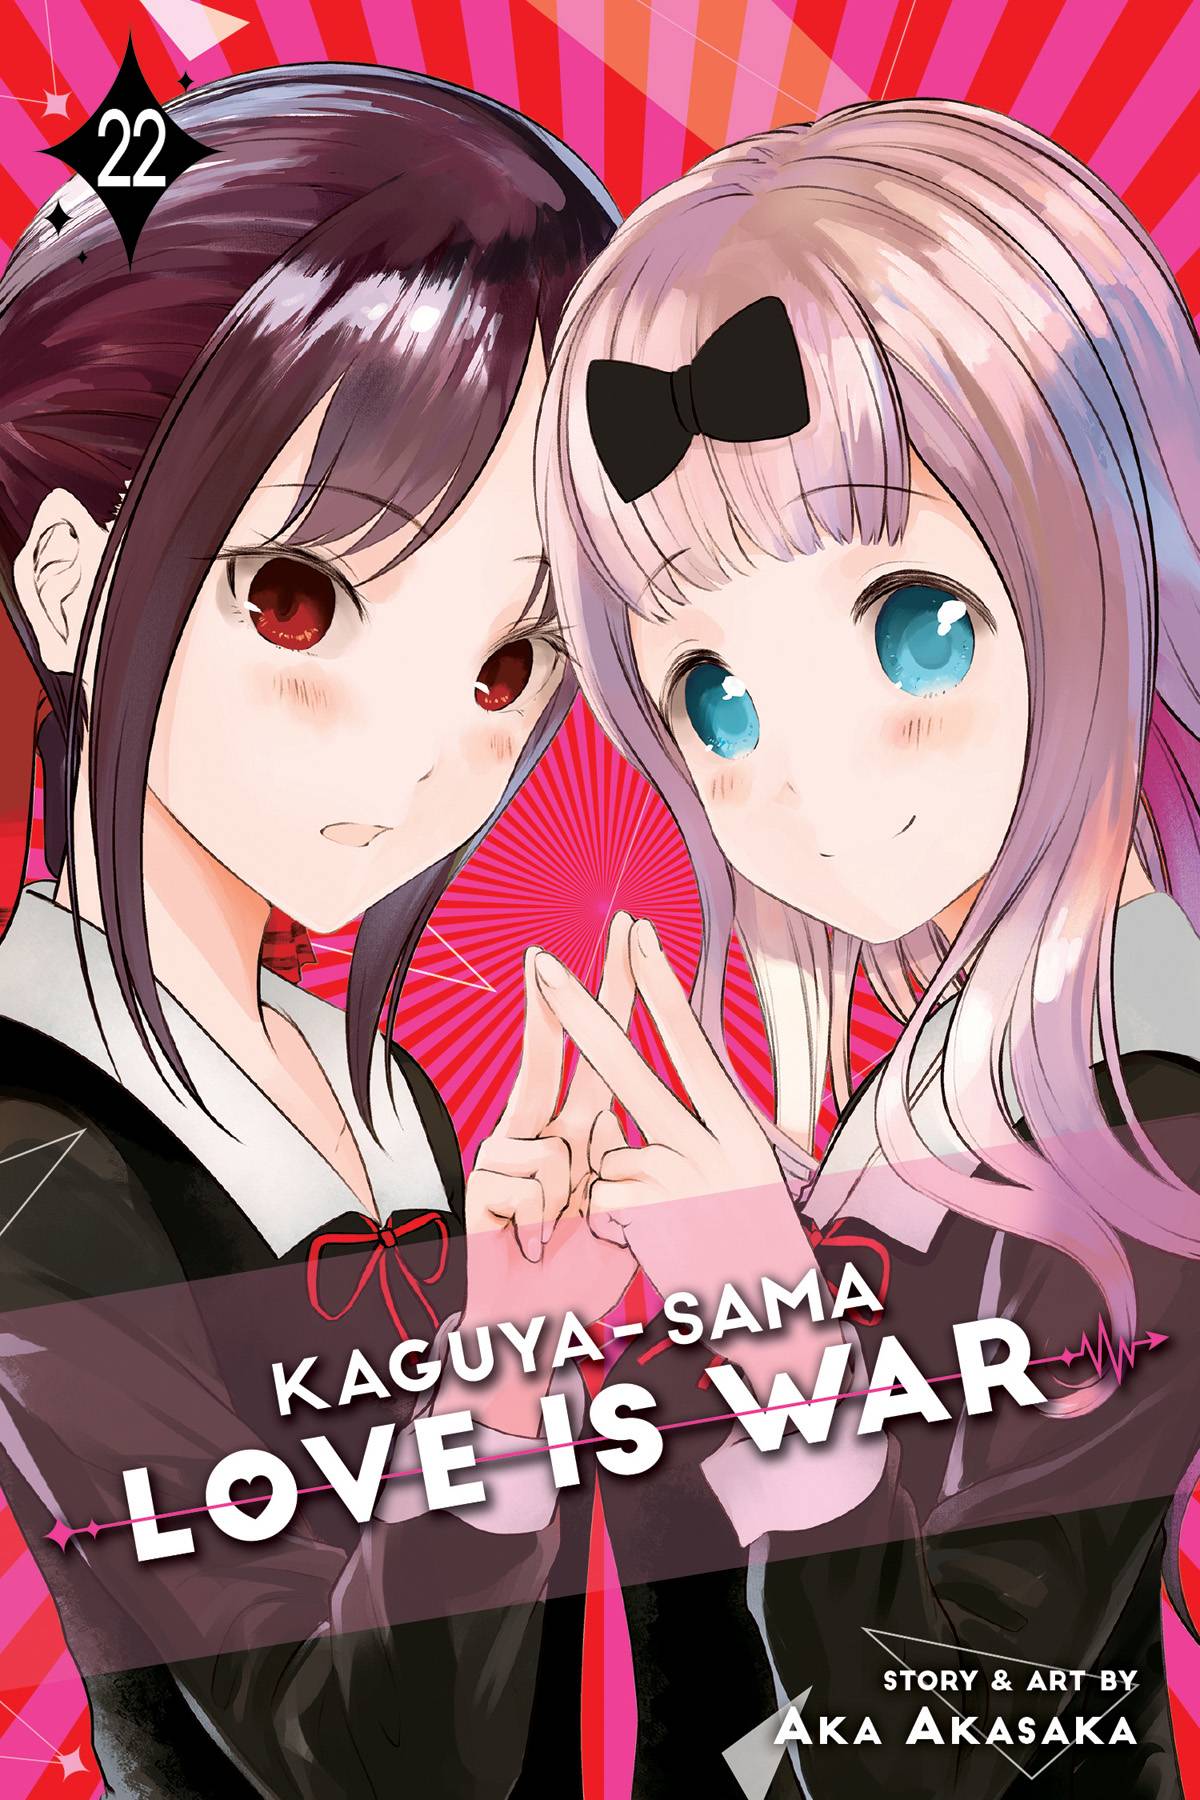 KAGUYA SAMA LOVE IS WAR GN VOL 22